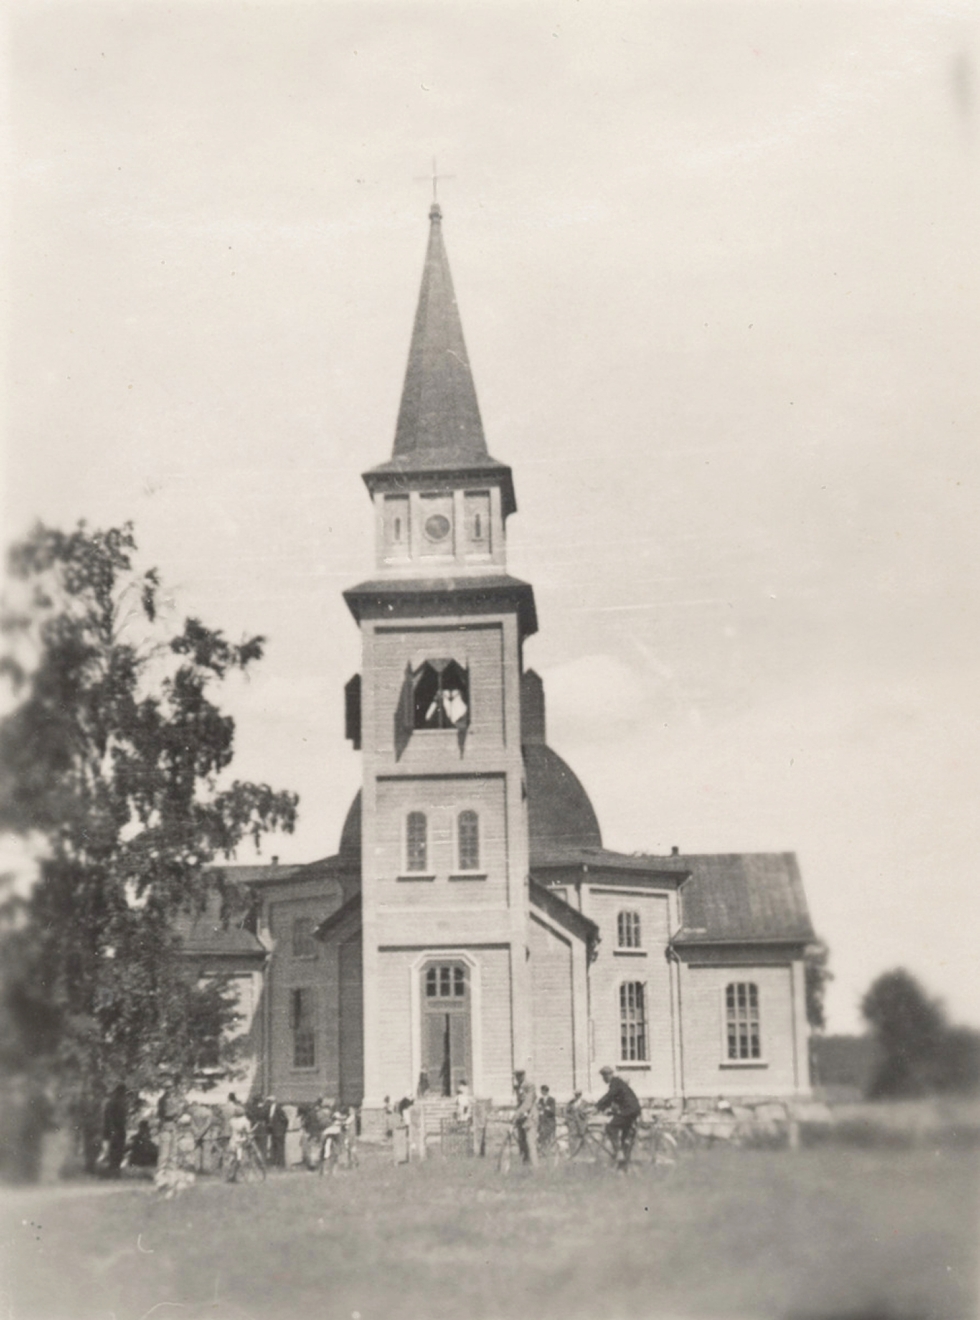 Keskellä kylää sijainneet kirkot olivat ennen vanhaan myös suosittuja kokoontumispaikkoja. Tämä kuva on otettu Rautjärven kirkon pihalla tiettävästi 1930-luvulla.